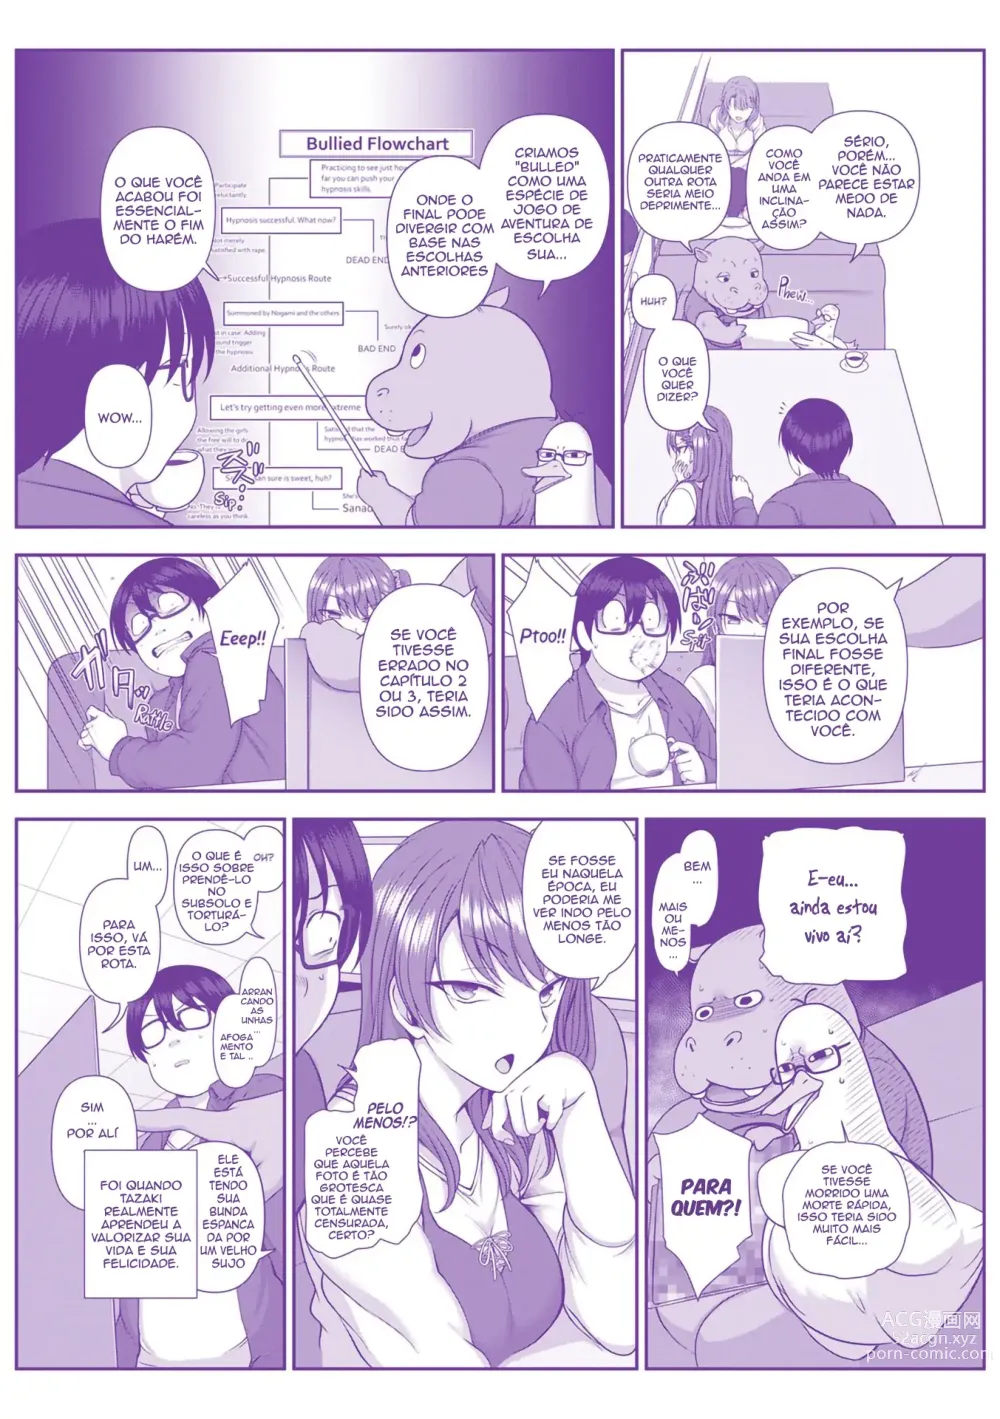 Page 19 of manga Bullied ~Revenge Hypnosis~ Epilogo